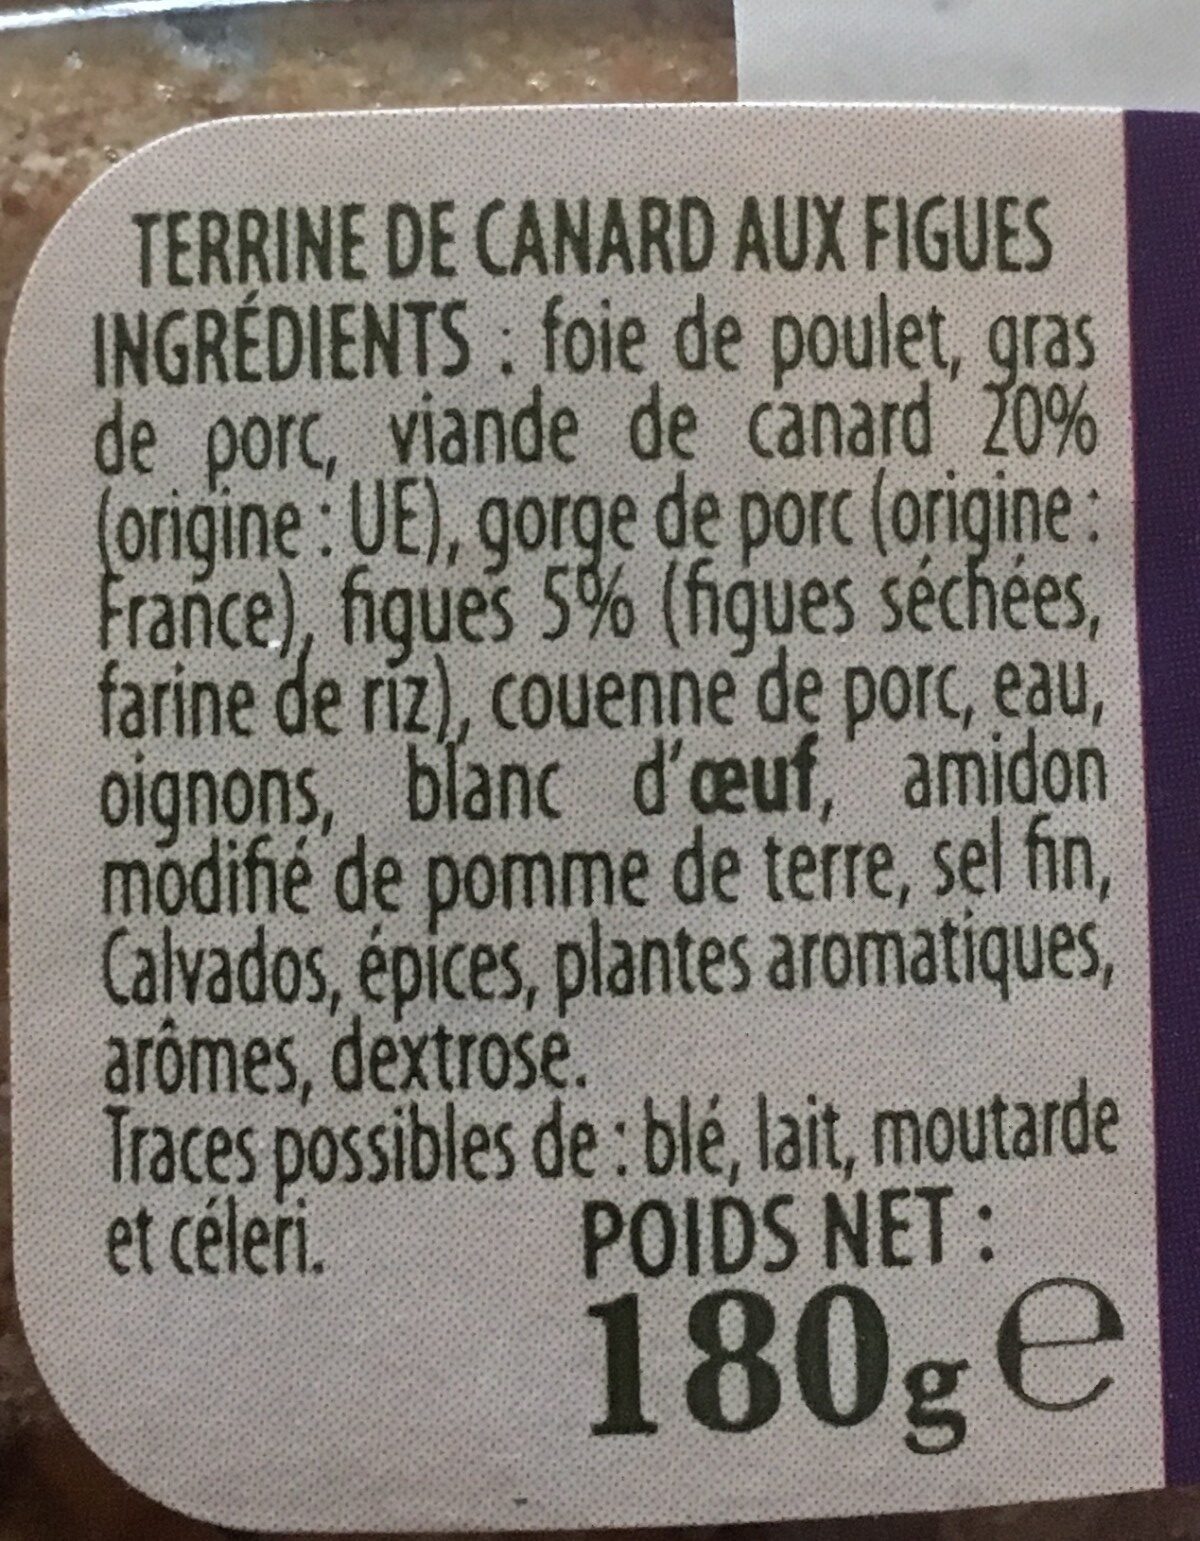 Terrine de canard aux figues - Ingredients - fr